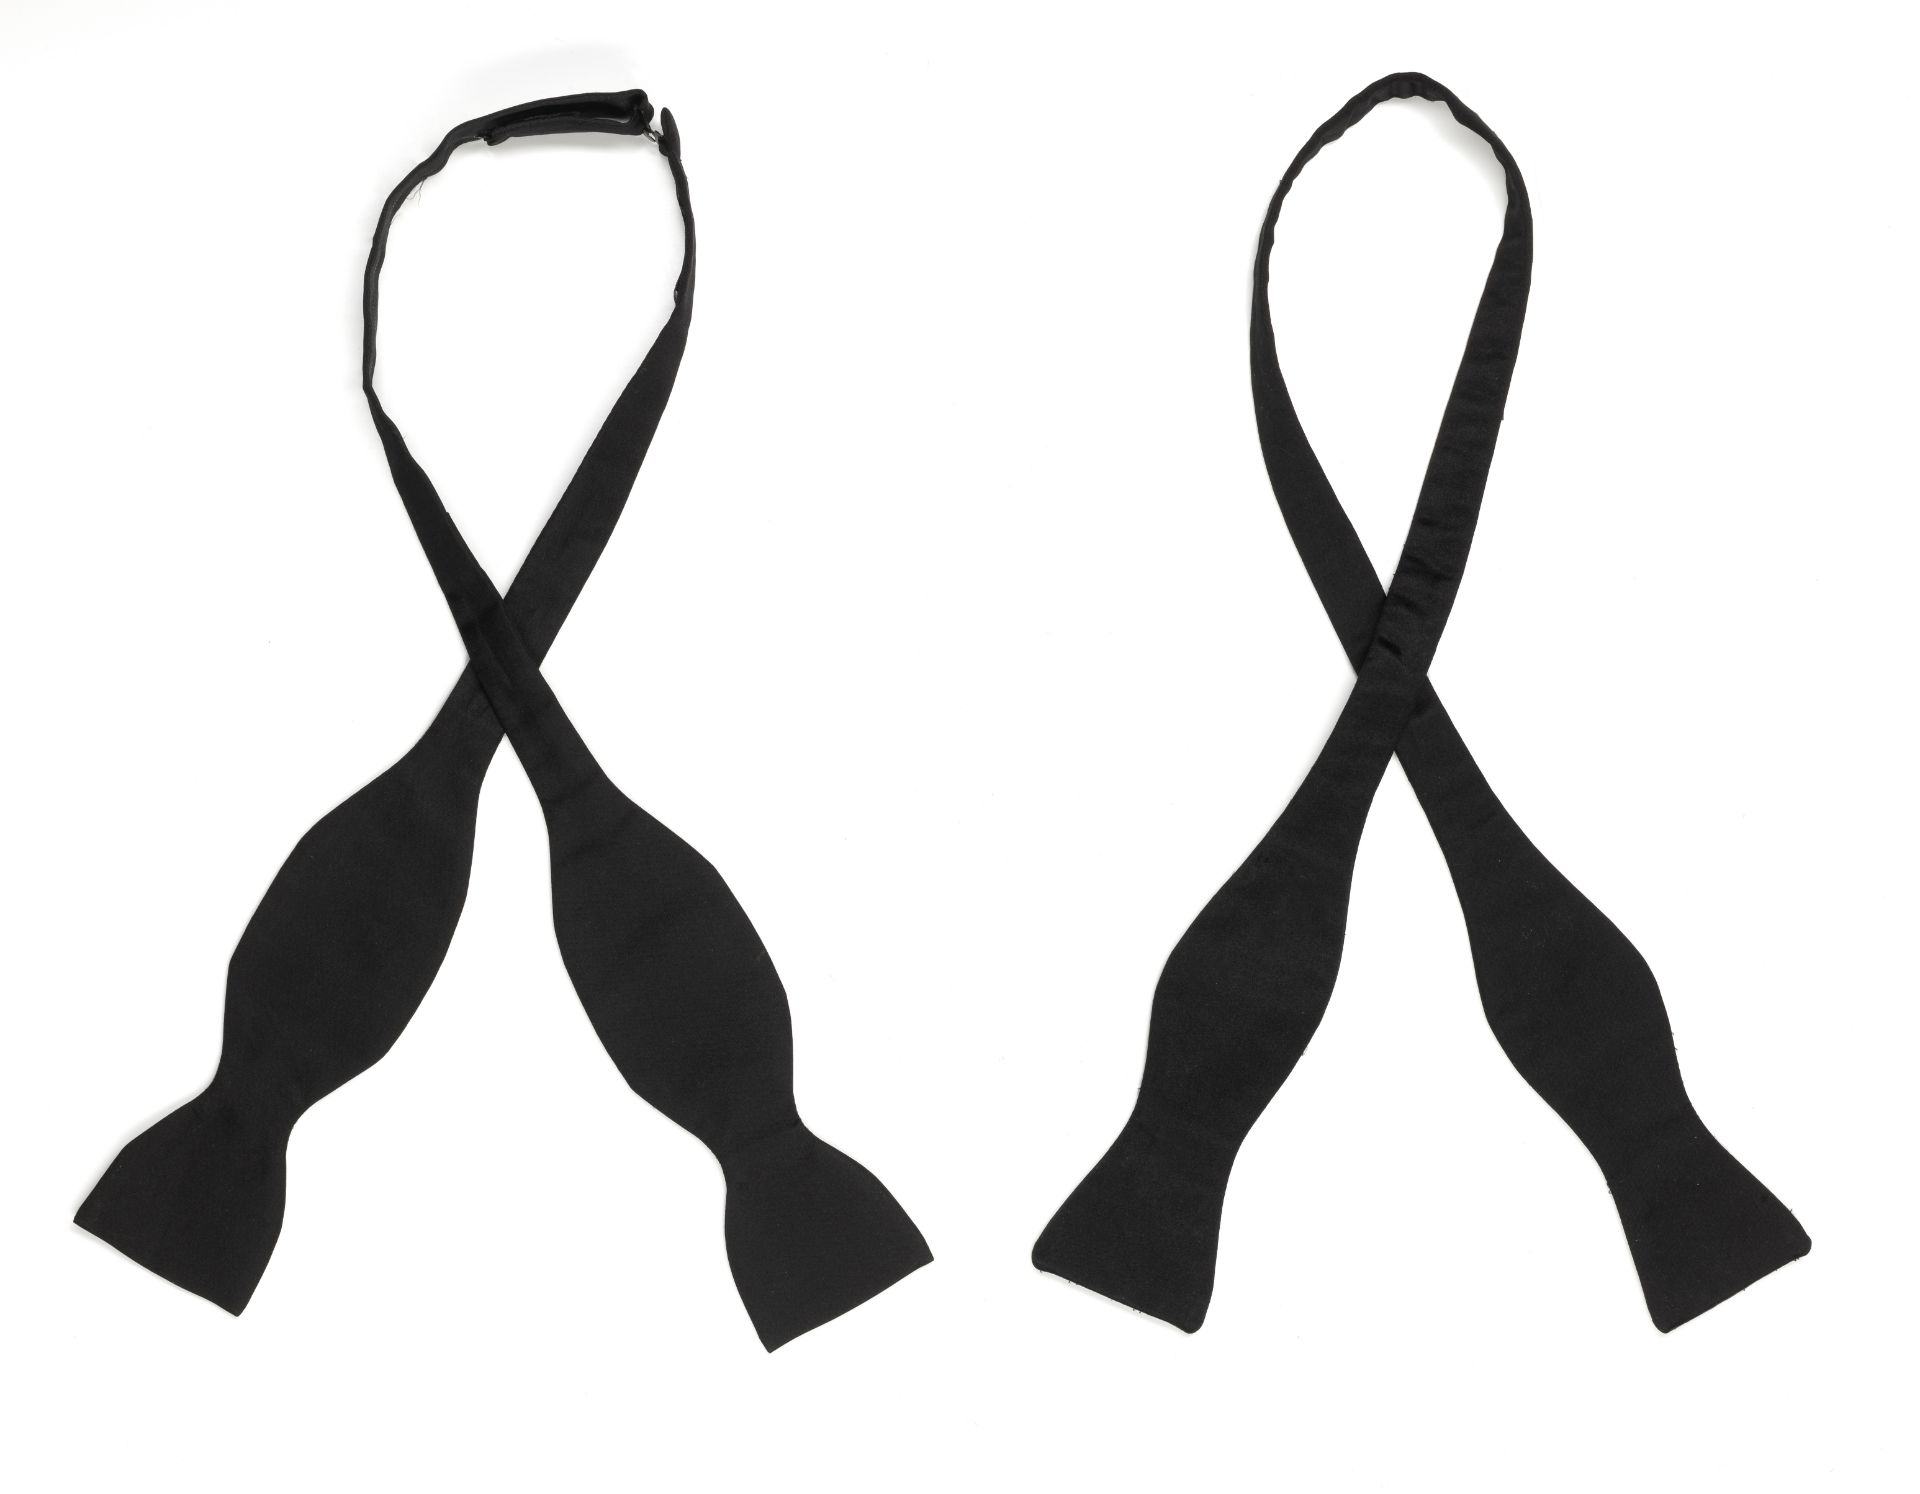 Two black silk bow ties belonging to Sir Roger Moore